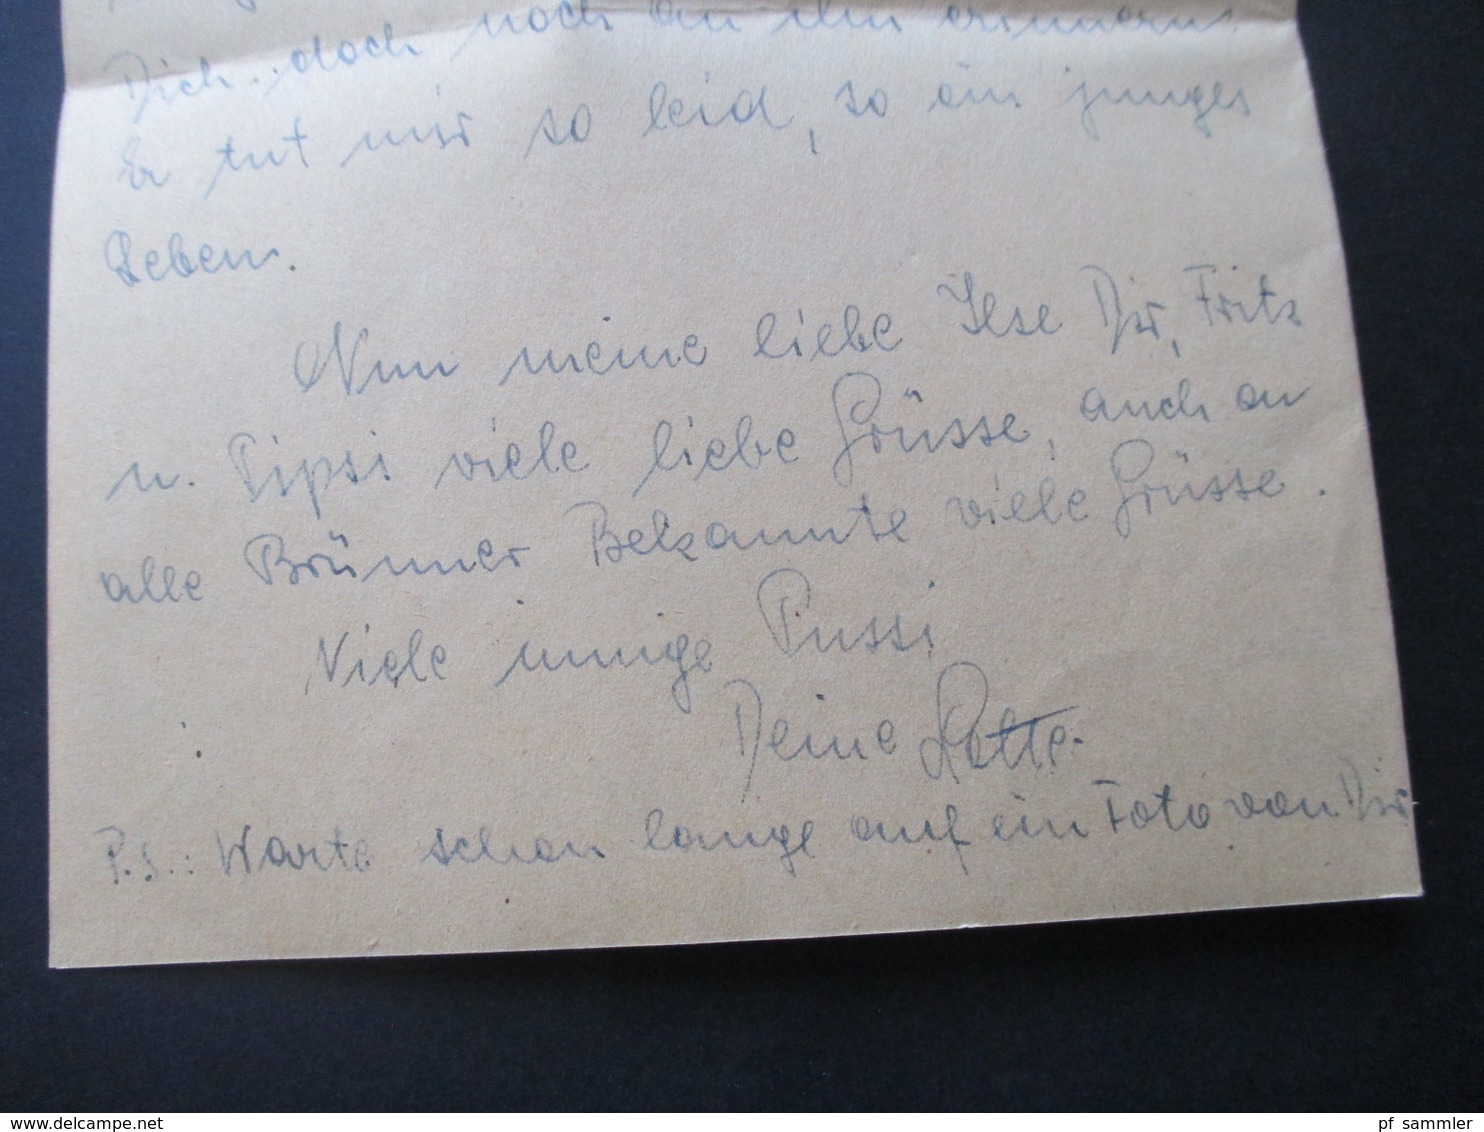 Österreich 1948 Notmaßnahme Gummistempel Bezahlt und handschriftl 40 Tagesstempel Bludenz Gräfin Chorinsky Wien